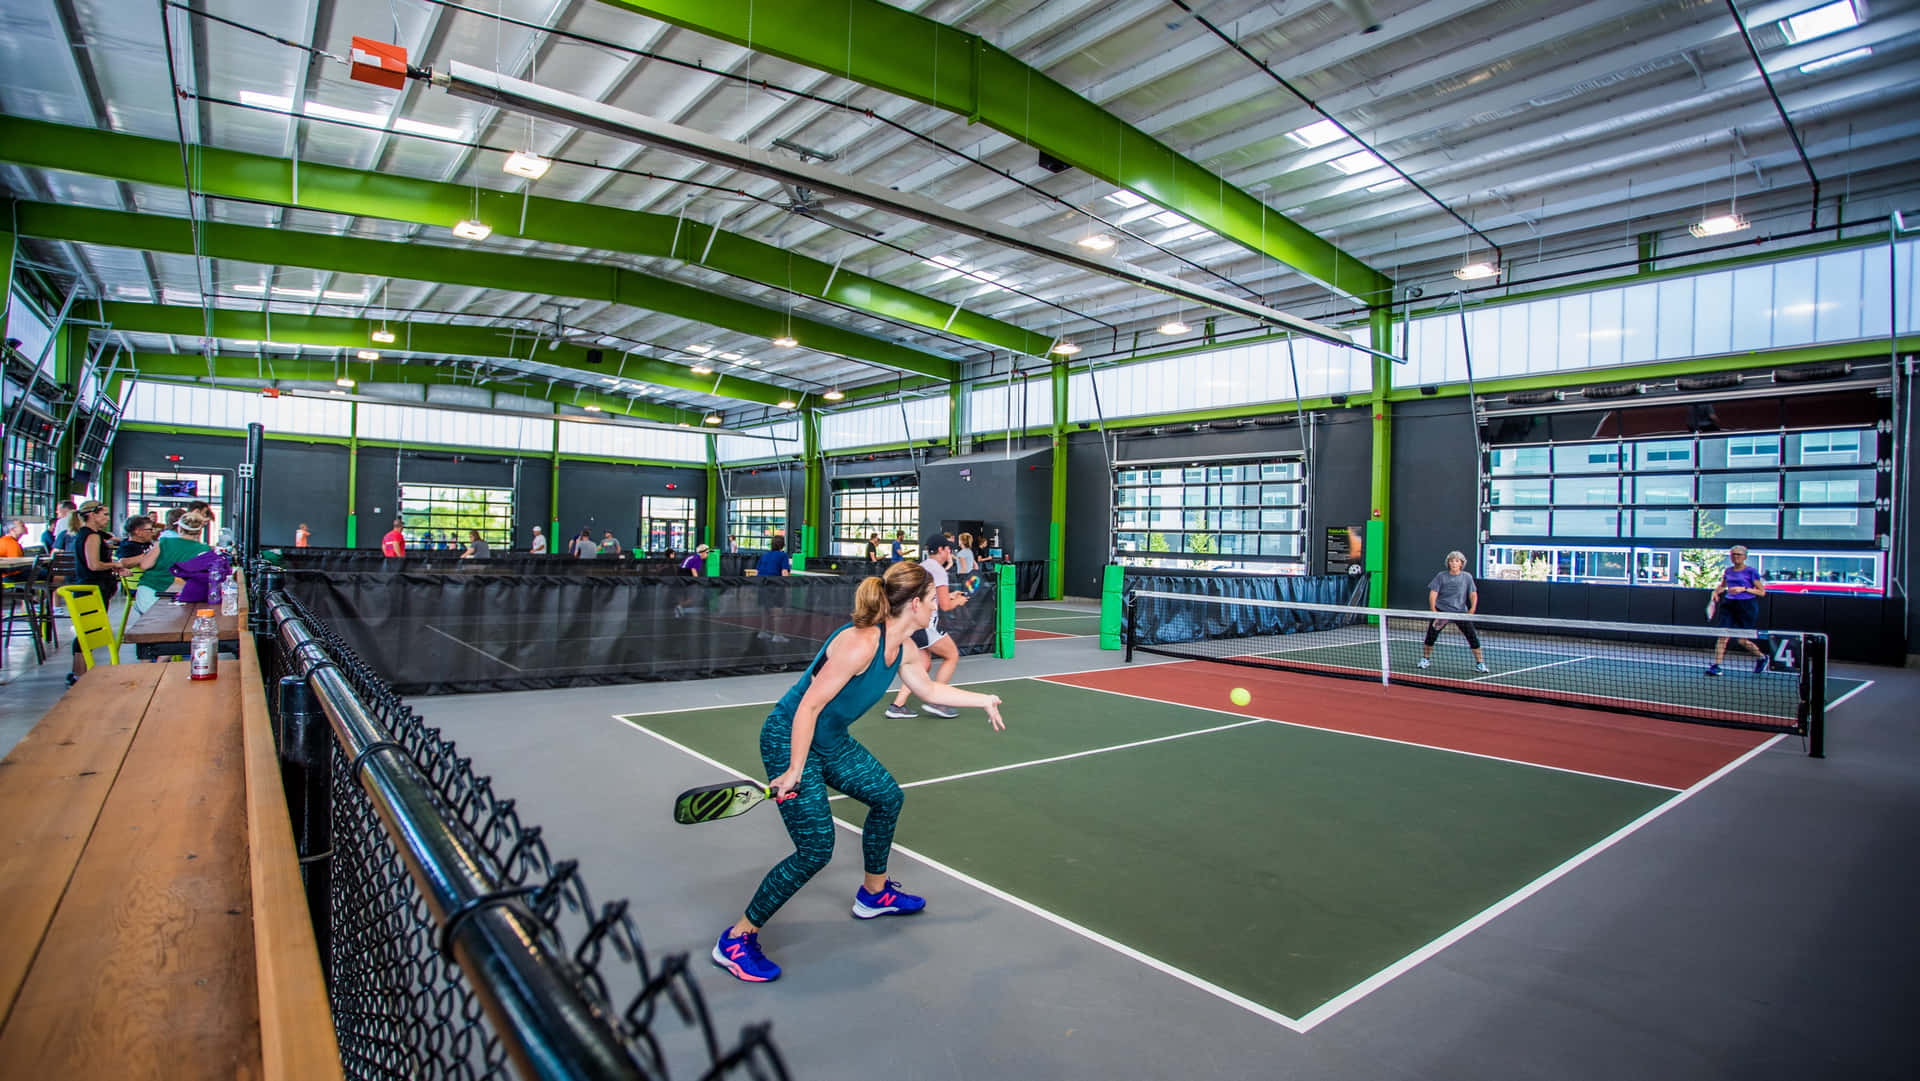 Ungruppo Di Persone Che Giocano A Tennis In Una Sala Interna